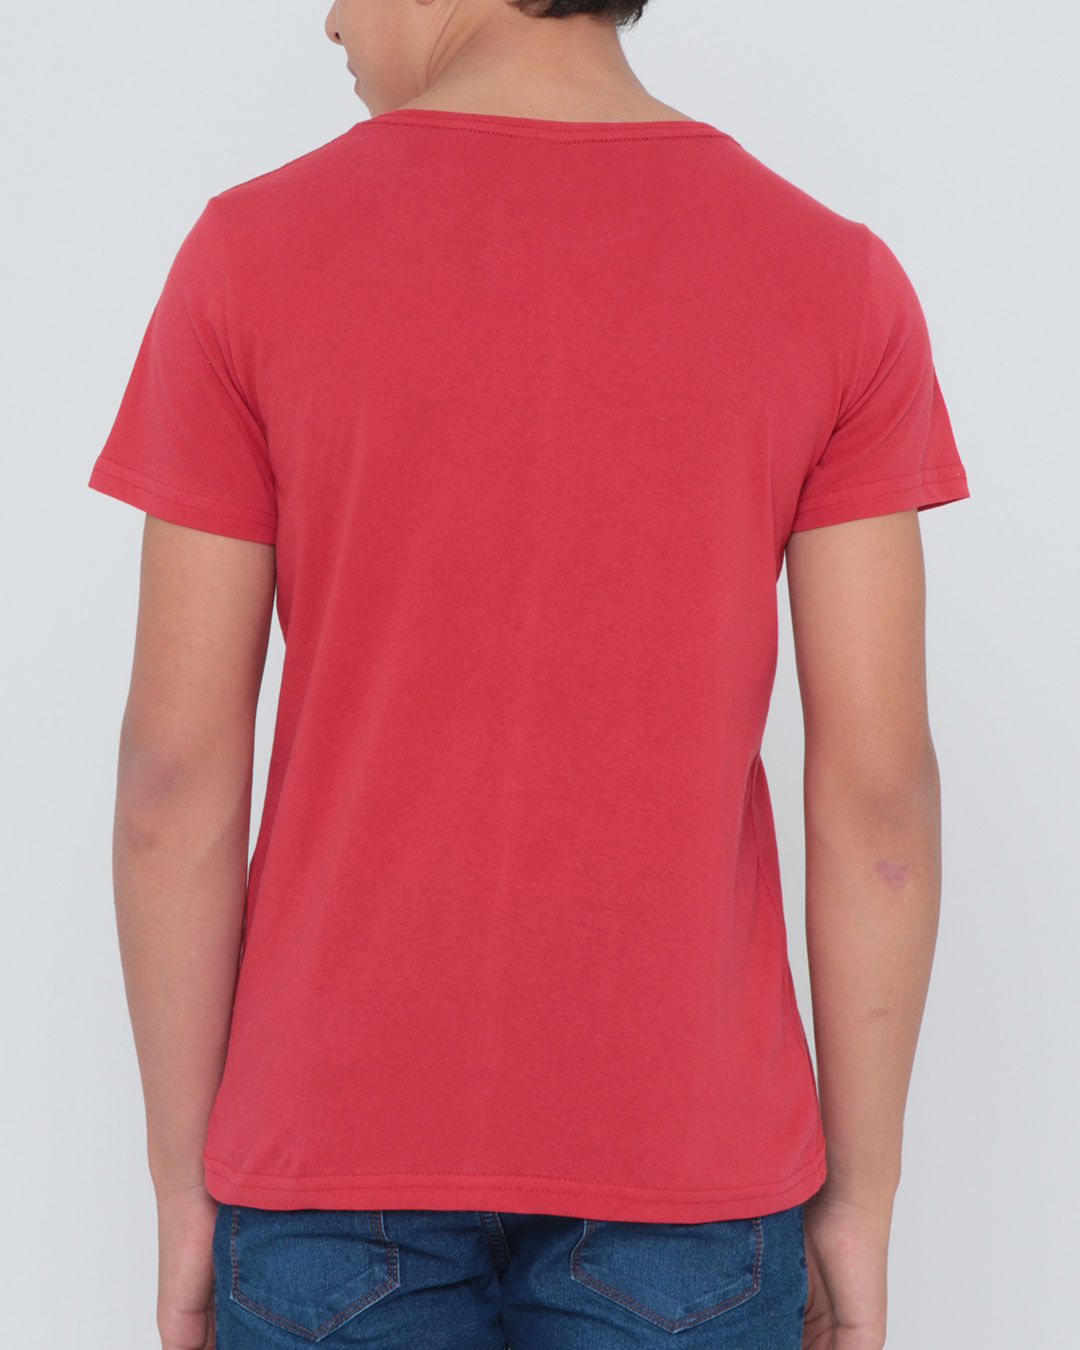 Camiseta-Jm494-Mc-M1016-Hf---Vermelho-Medio